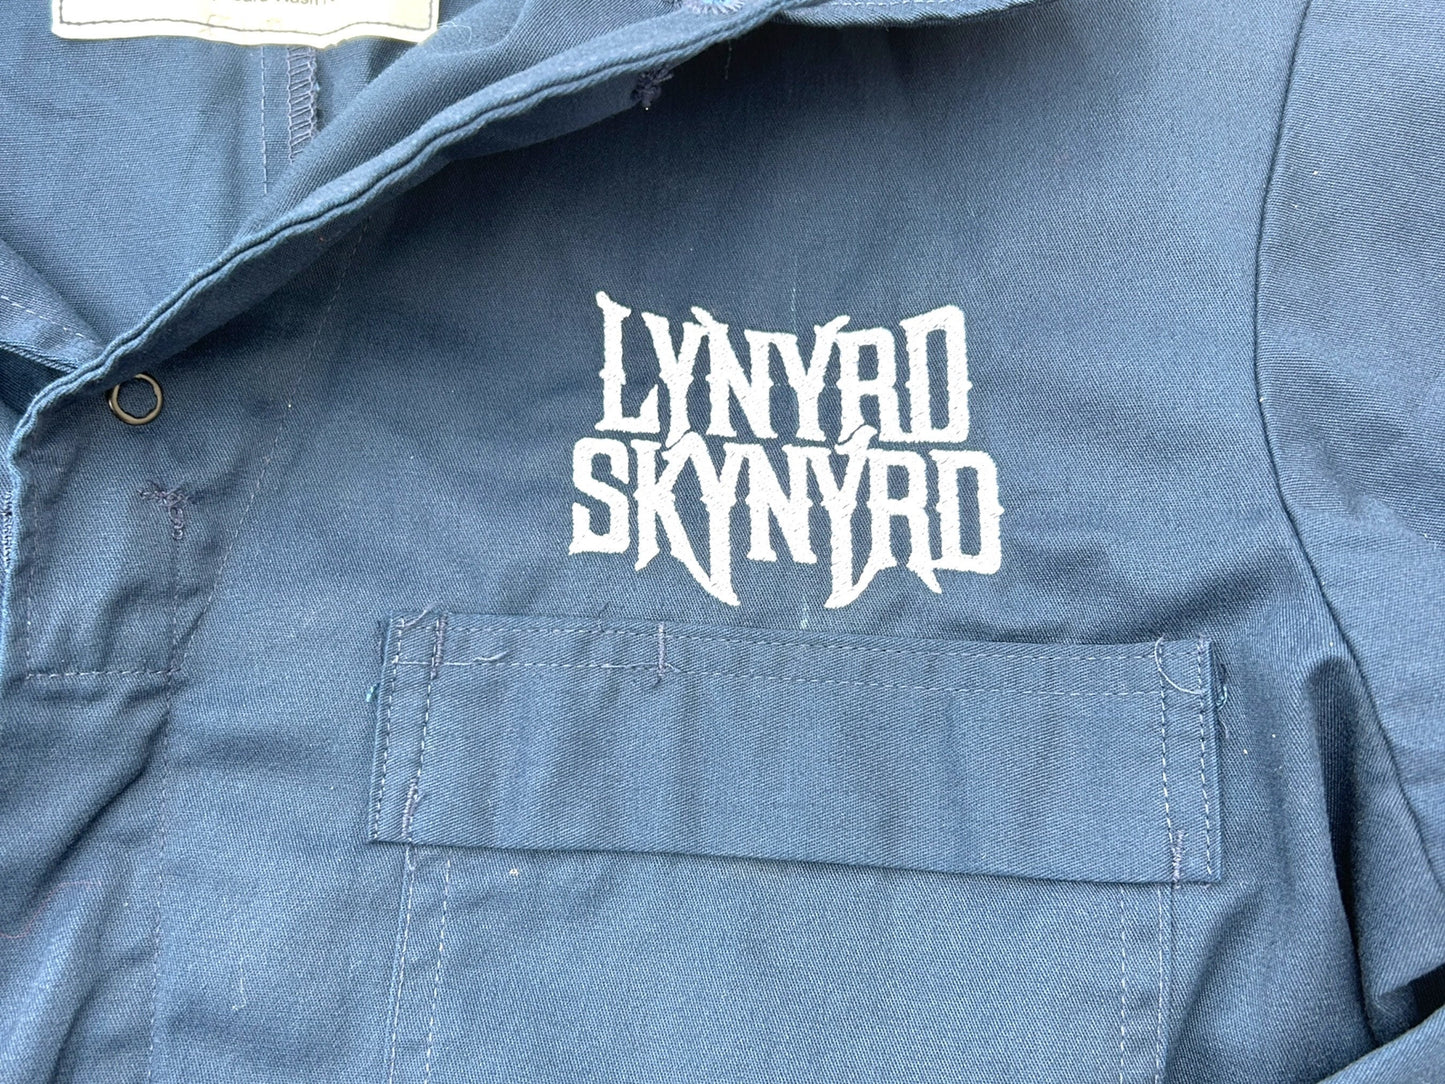 Lynryd Skynyrd Coveralls - Arly